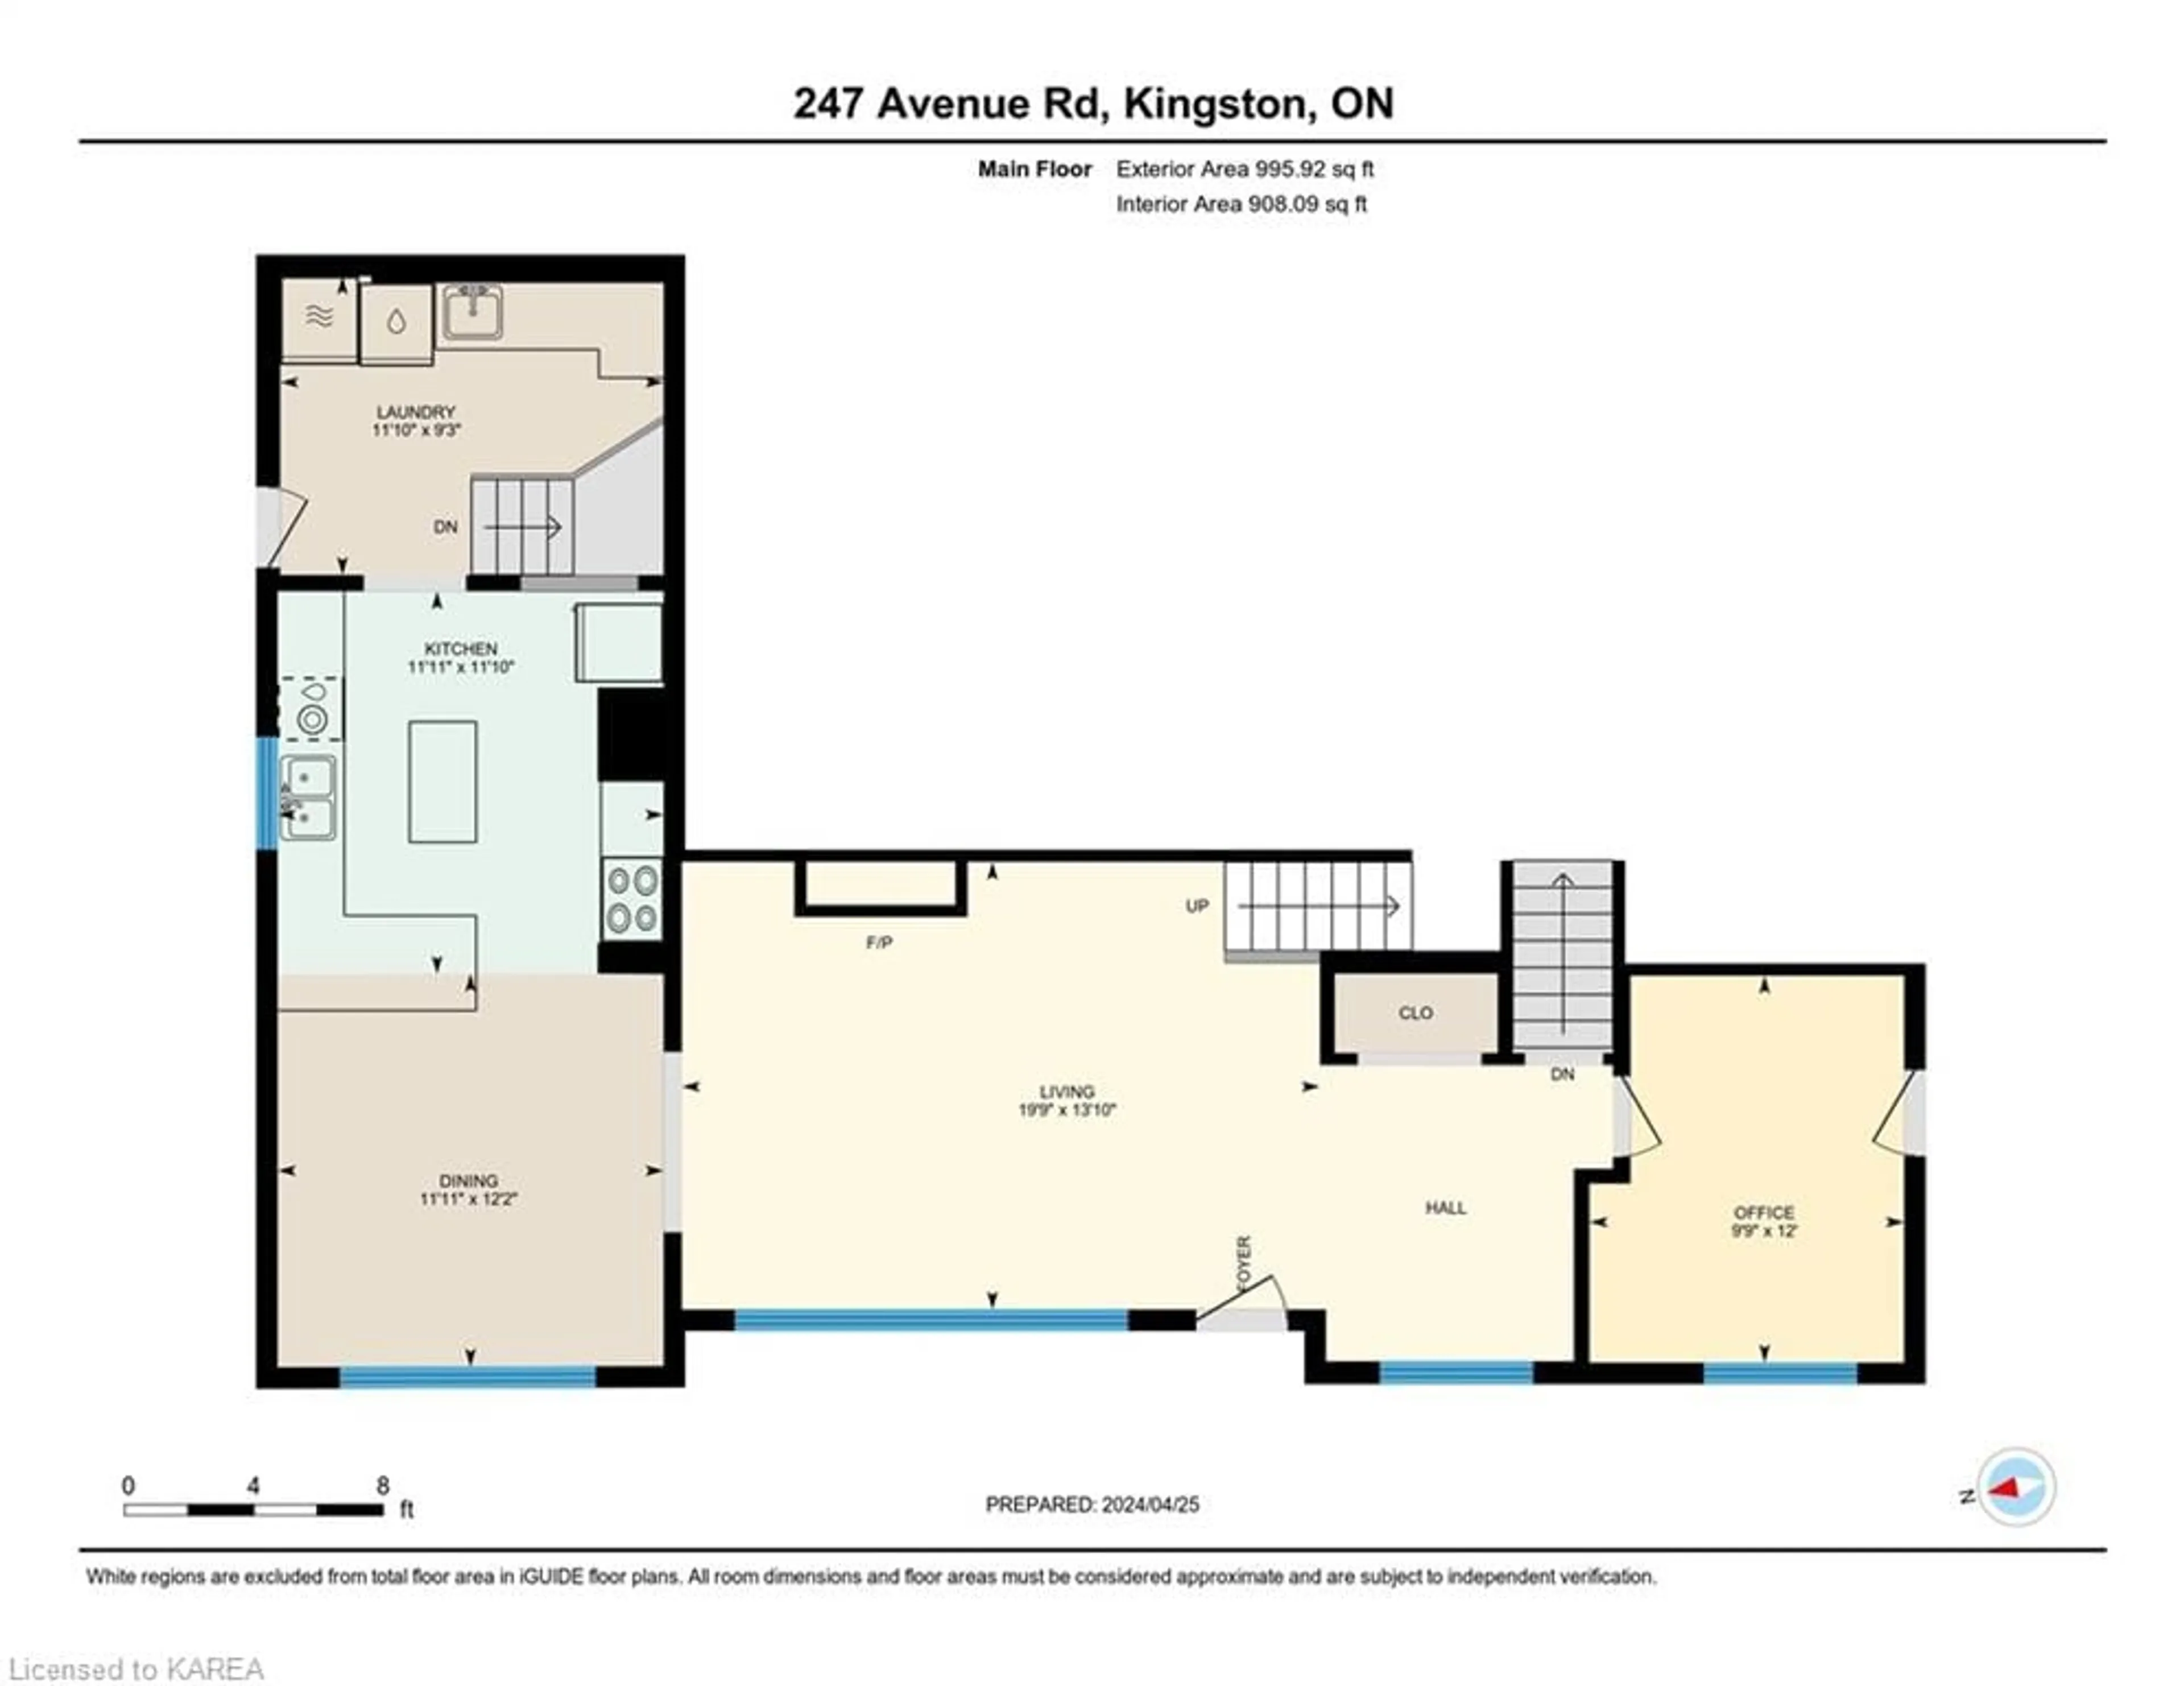 Floor plan for 247 Avenue Rd, Kingston Ontario K7M 1C4